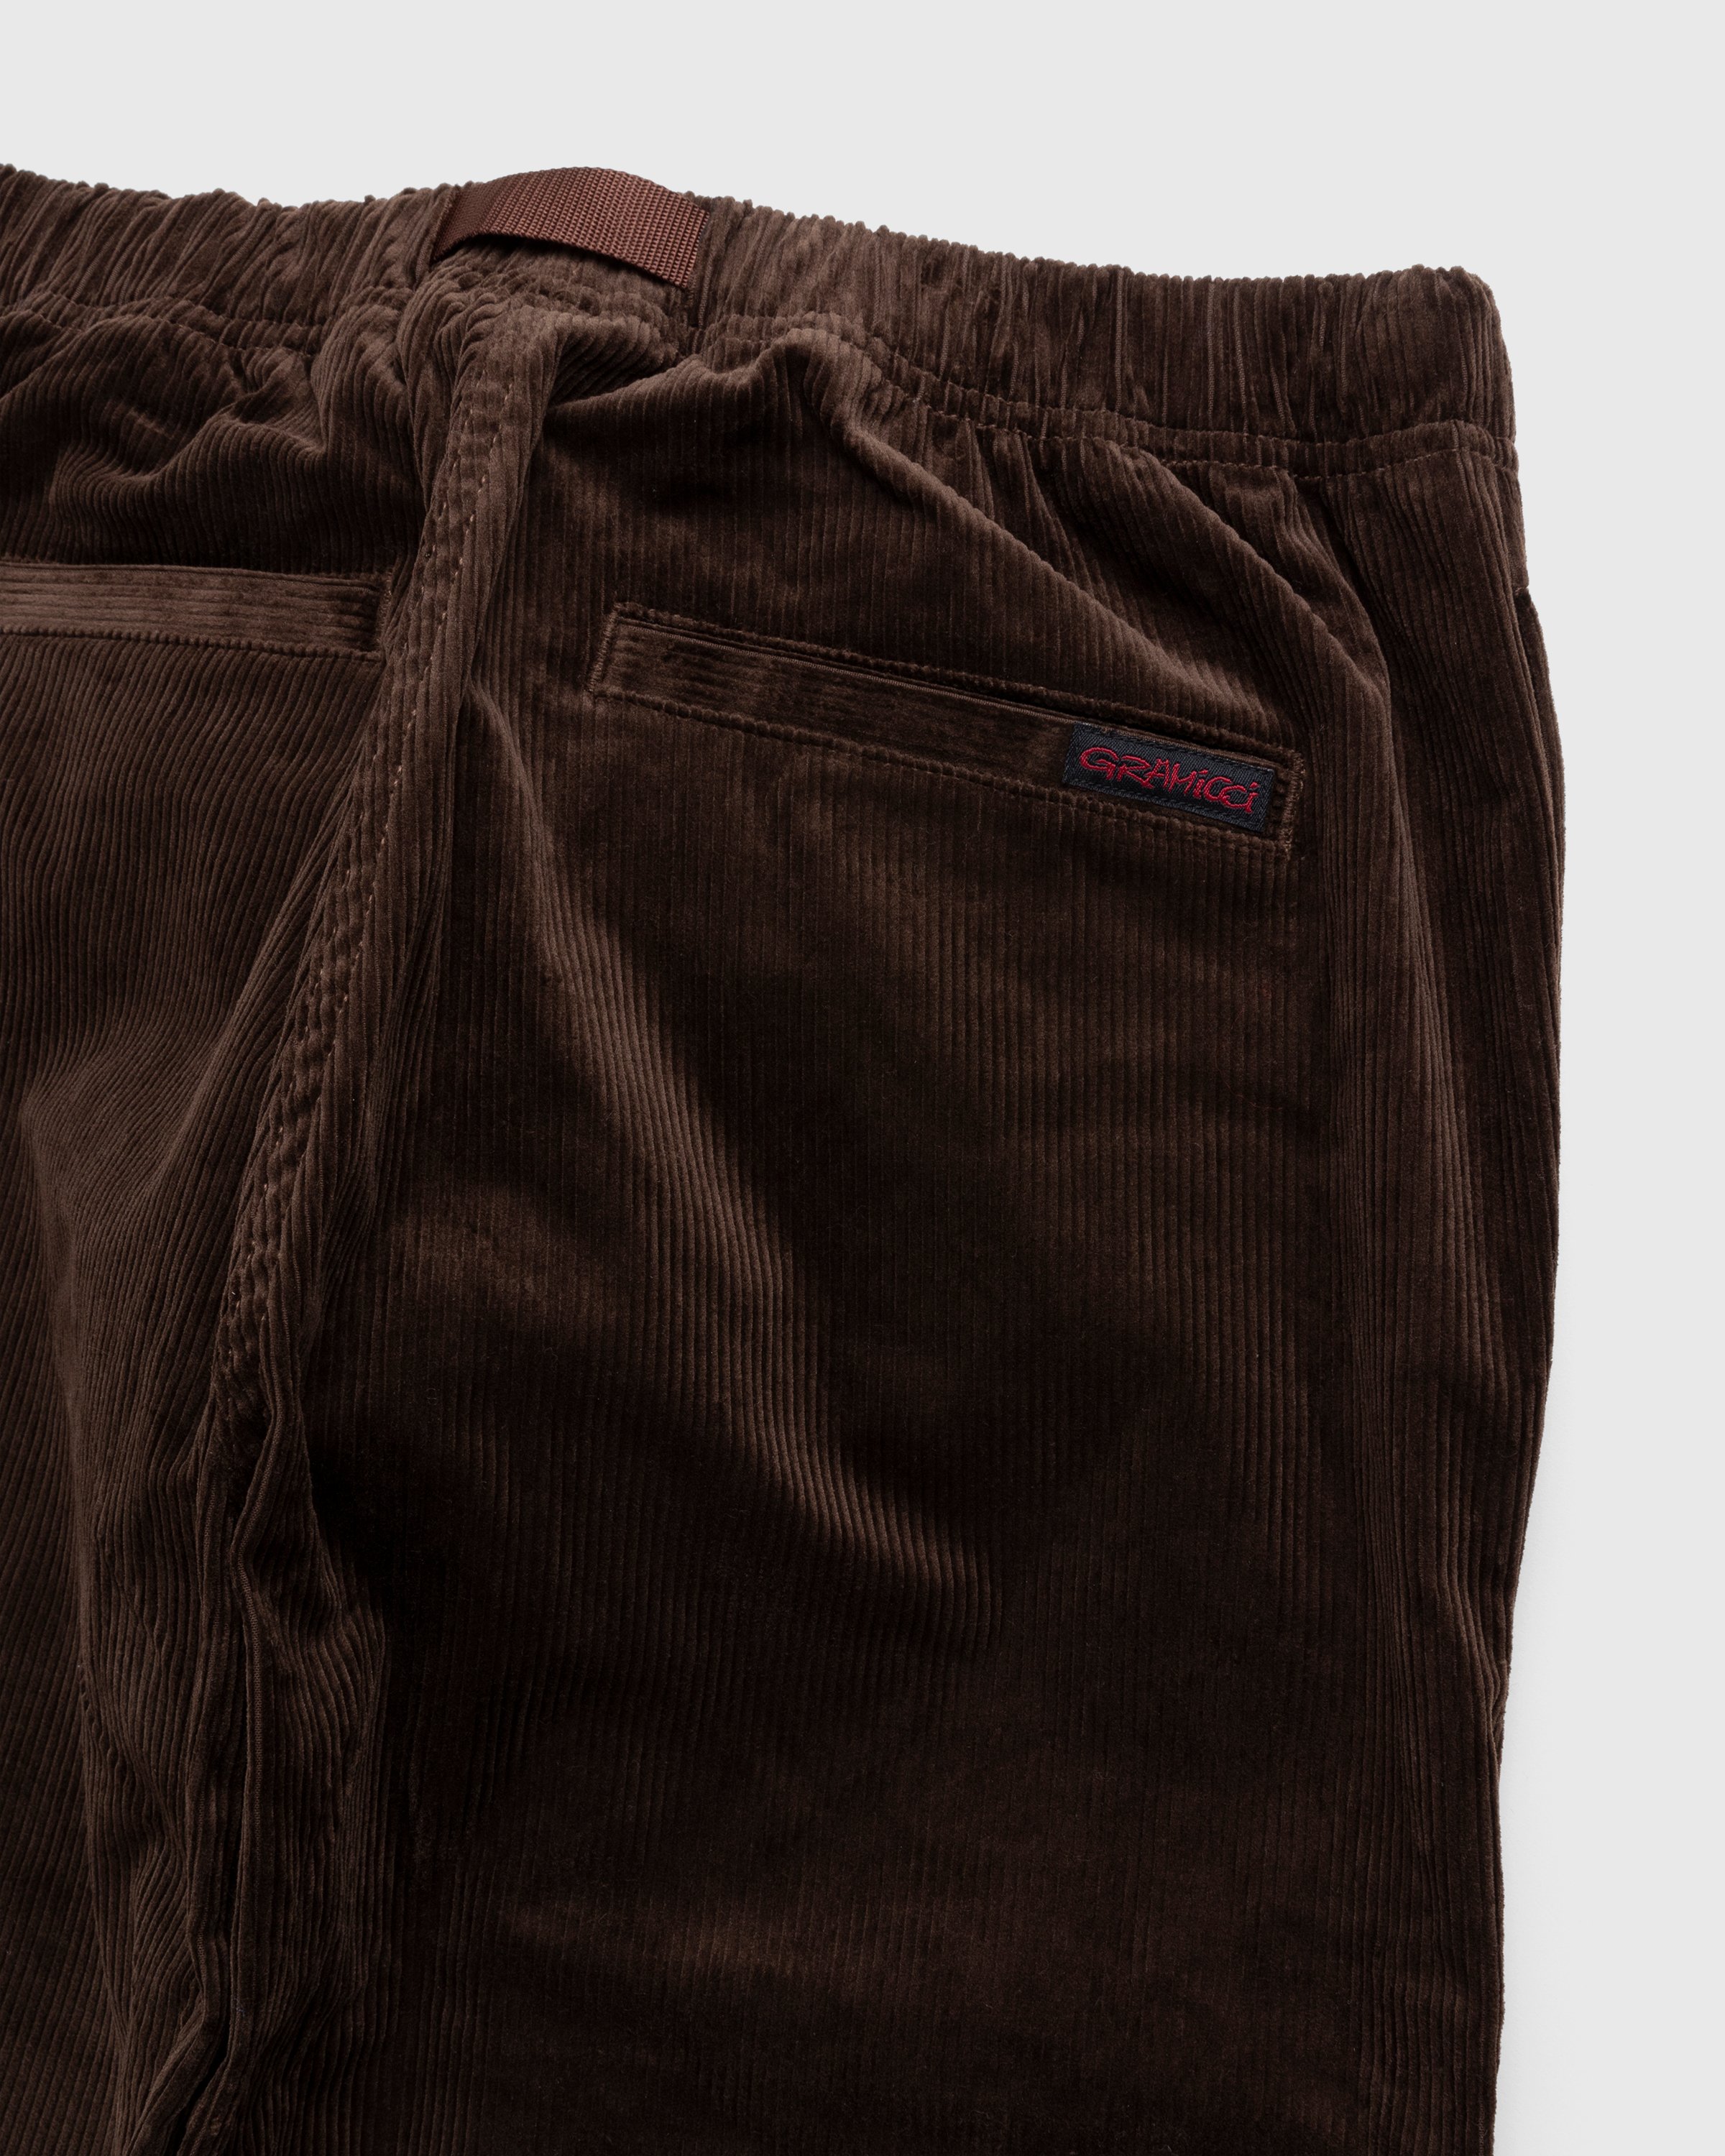 Gramicci - Corduroy Gramicci Pant Dark Brown - Clothing - Brown - Image 4